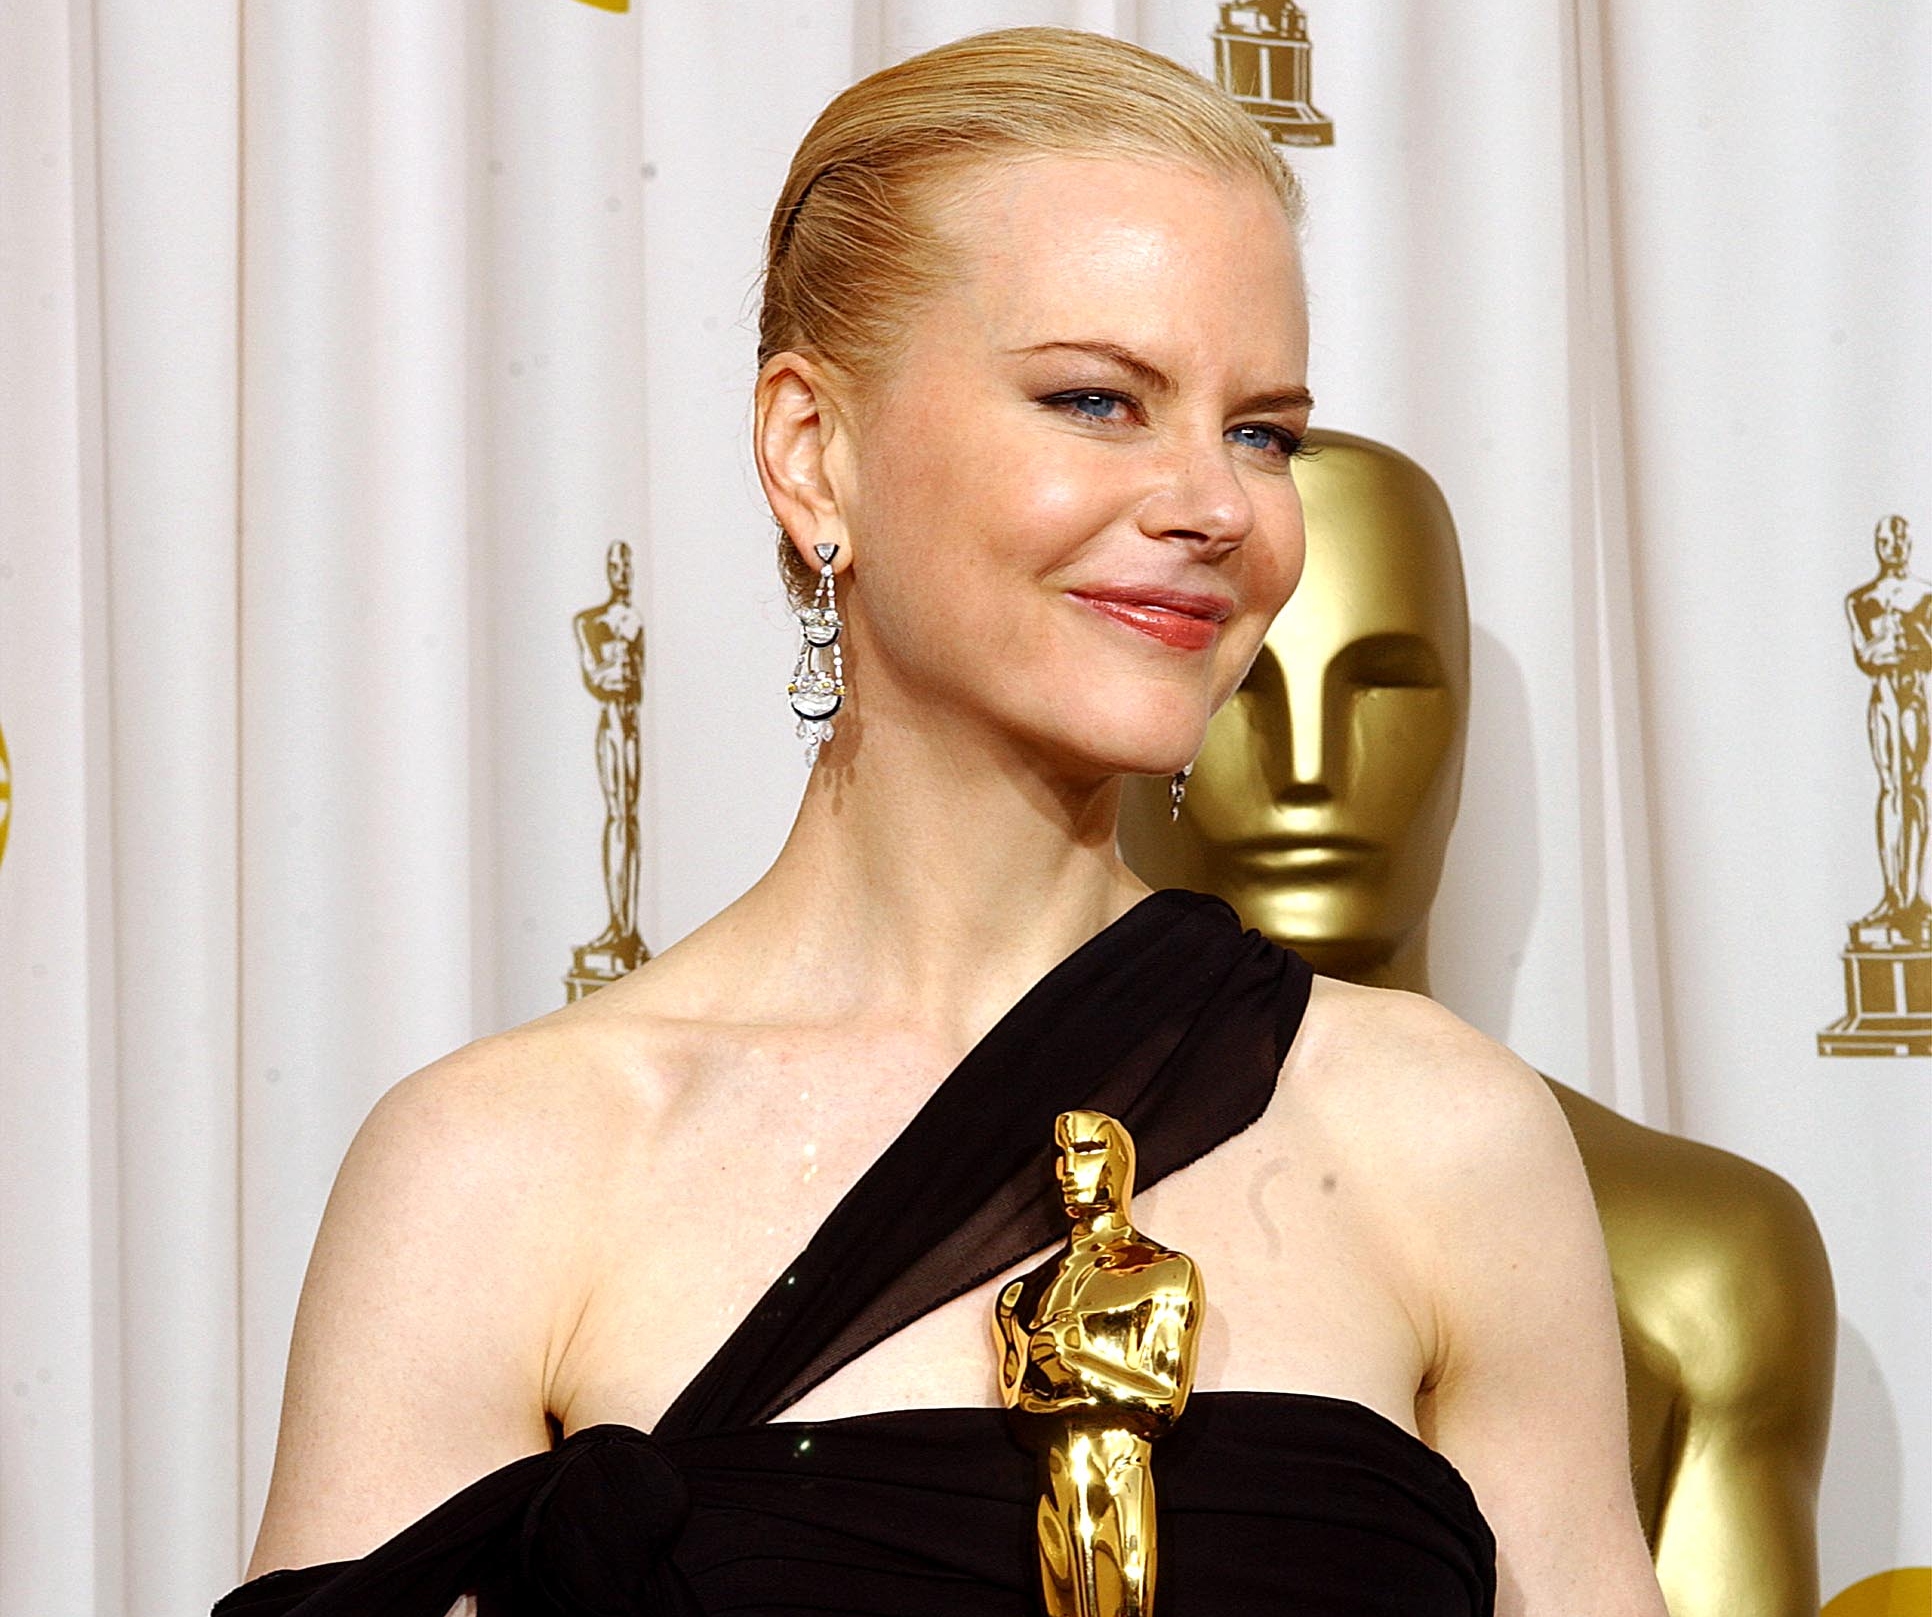 Foto da atriz Nicole Kidman segurando uma estatueta do Oscar. Nicole é uma mulher branca de olhos azuis, ela tem cabelos loiros, que estão presos em um coque baixo; ela veste um vestido preto com uma alça atravessada no colo do seu peito e usa um par de brincos com pedras. Ao fundo, é possível ver uma parte da estatueta do Oscar em tamanho grande. 